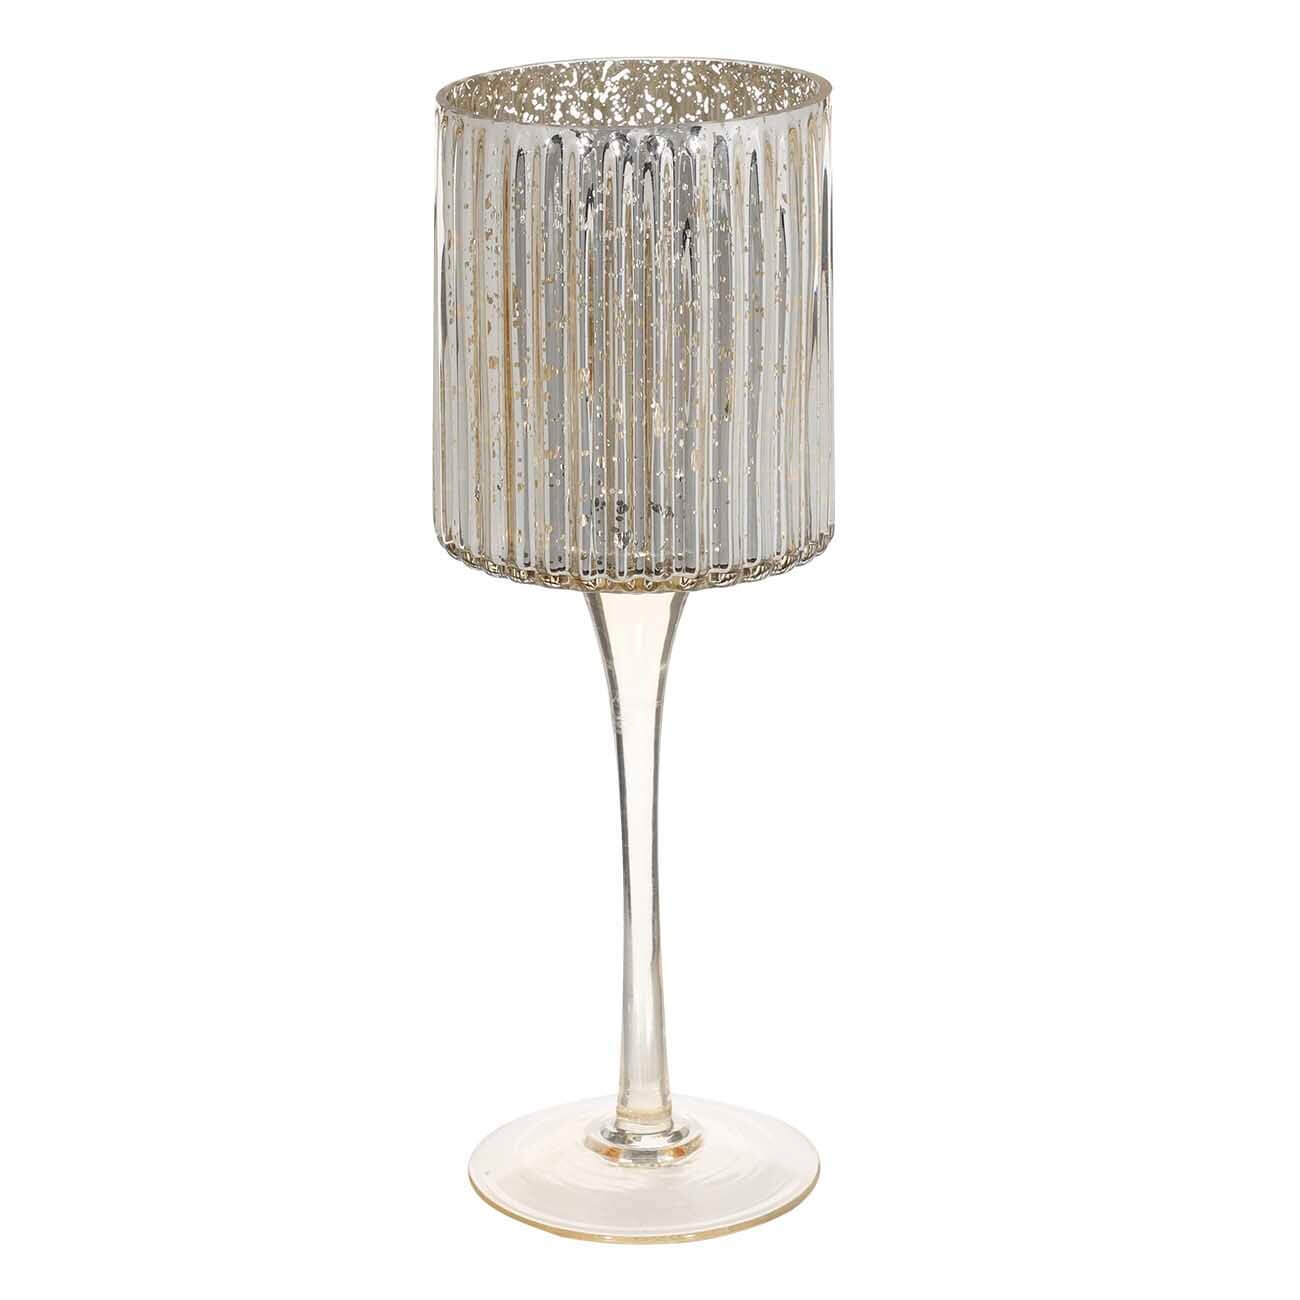 Подсвечник, 25 см, для чайной свечи, на ножке, стекло, шампань, Patina подсвечник металл стекло на 3 свечи сплетённые кольца золото 18х6х10 см